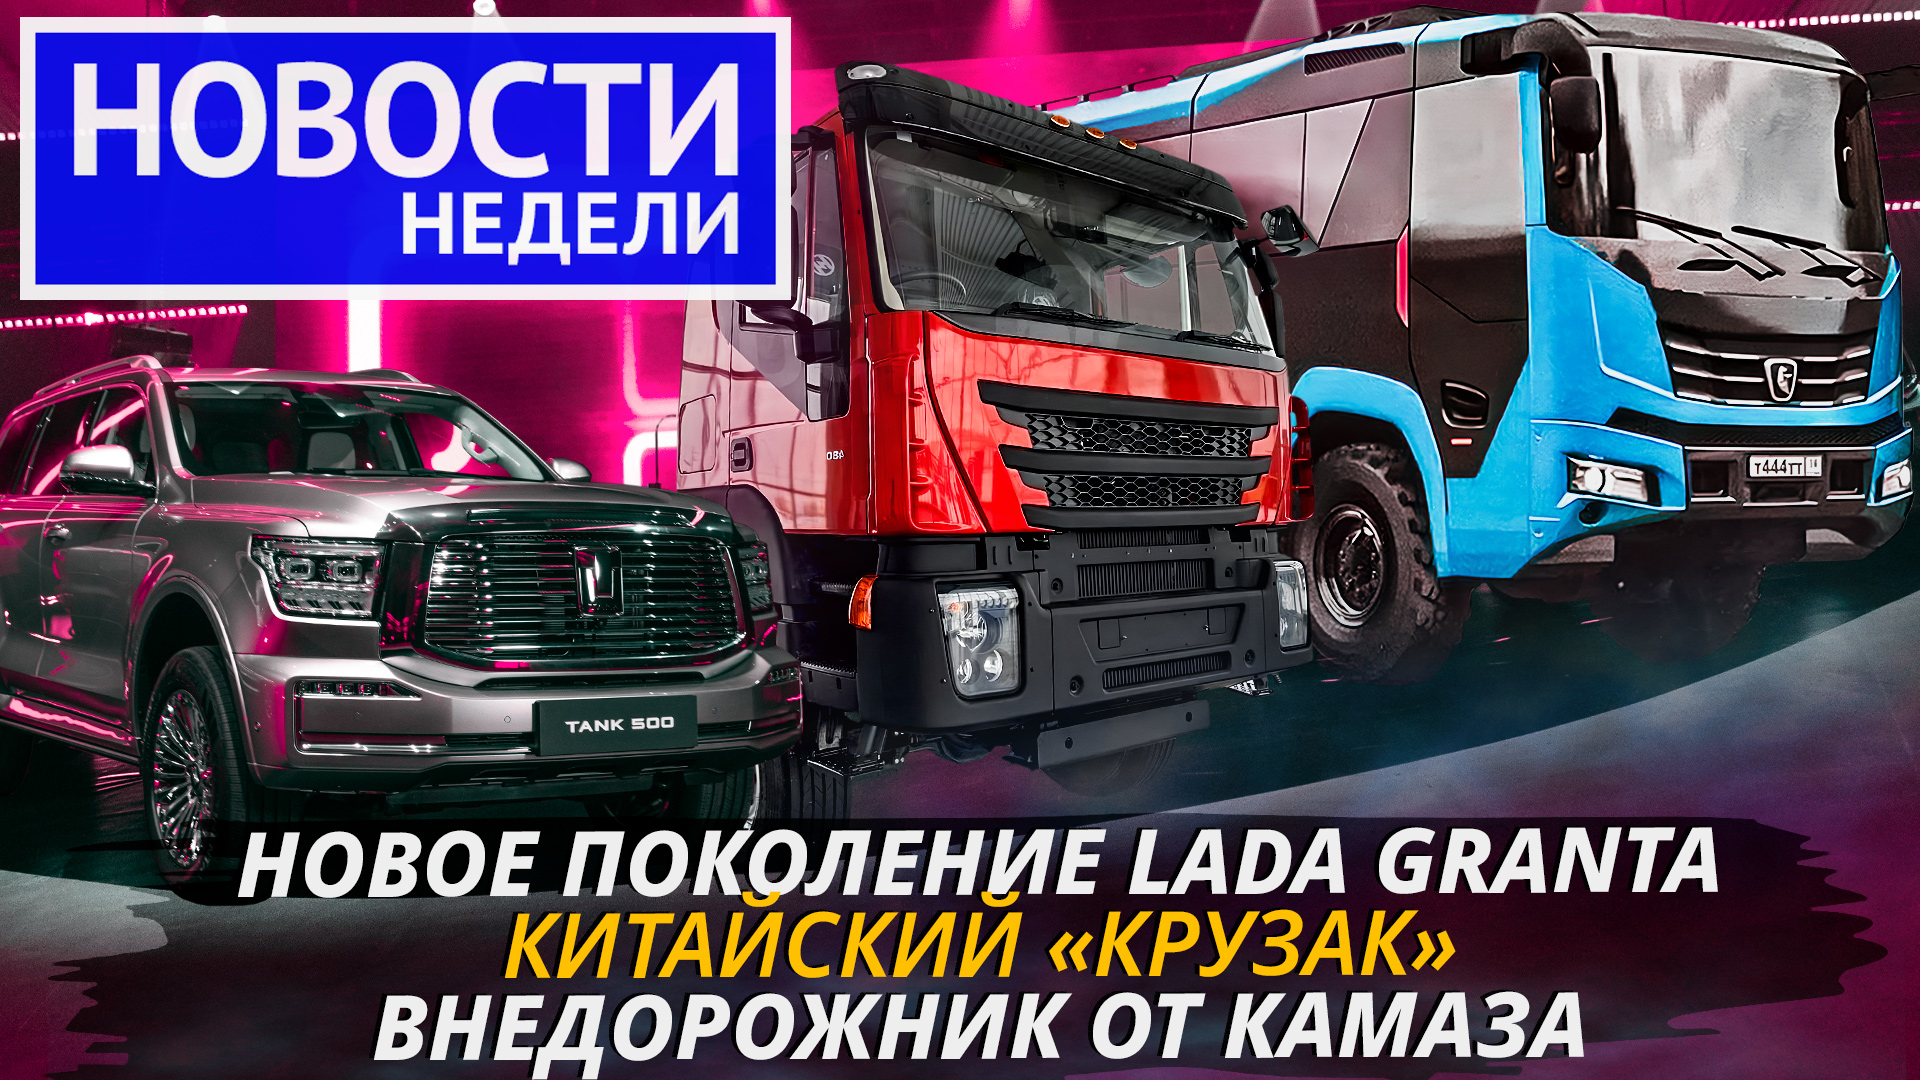 Внешность новой Гранты, КамАЗ делает внедорожник, грузовики Ивеко-АМТ и другие «Новости недели» №211